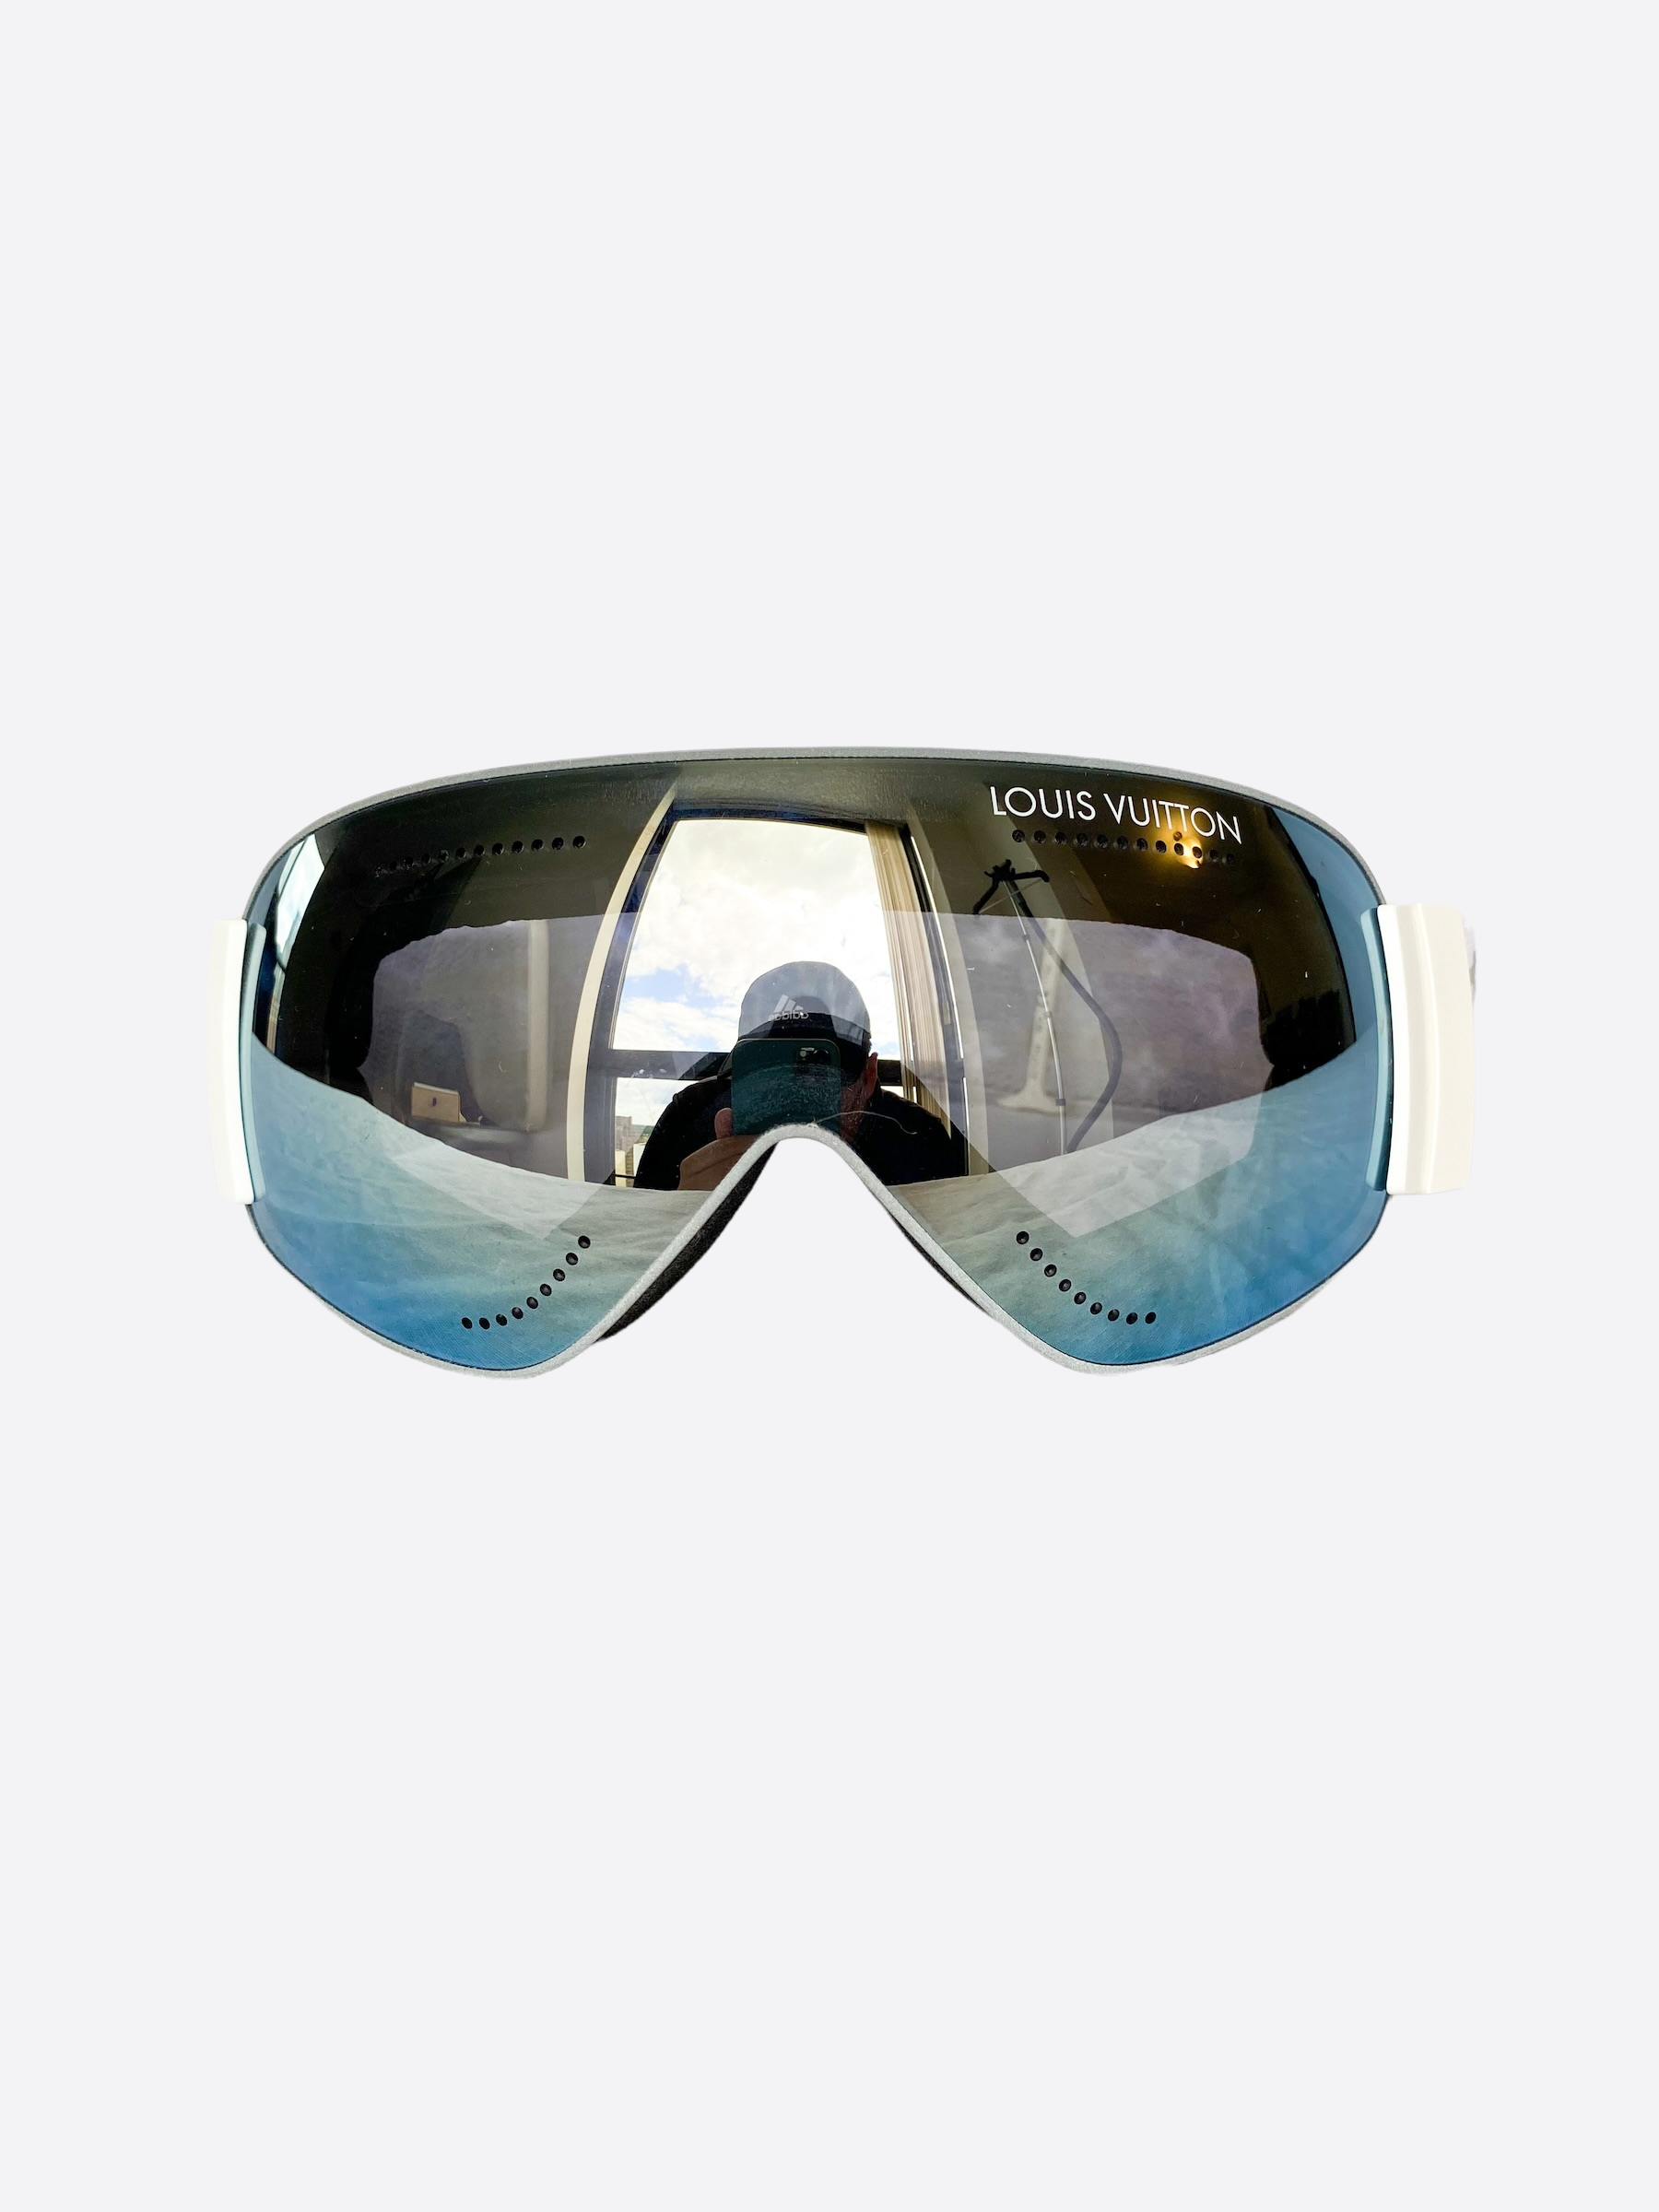 louis vuitton ski goggles price